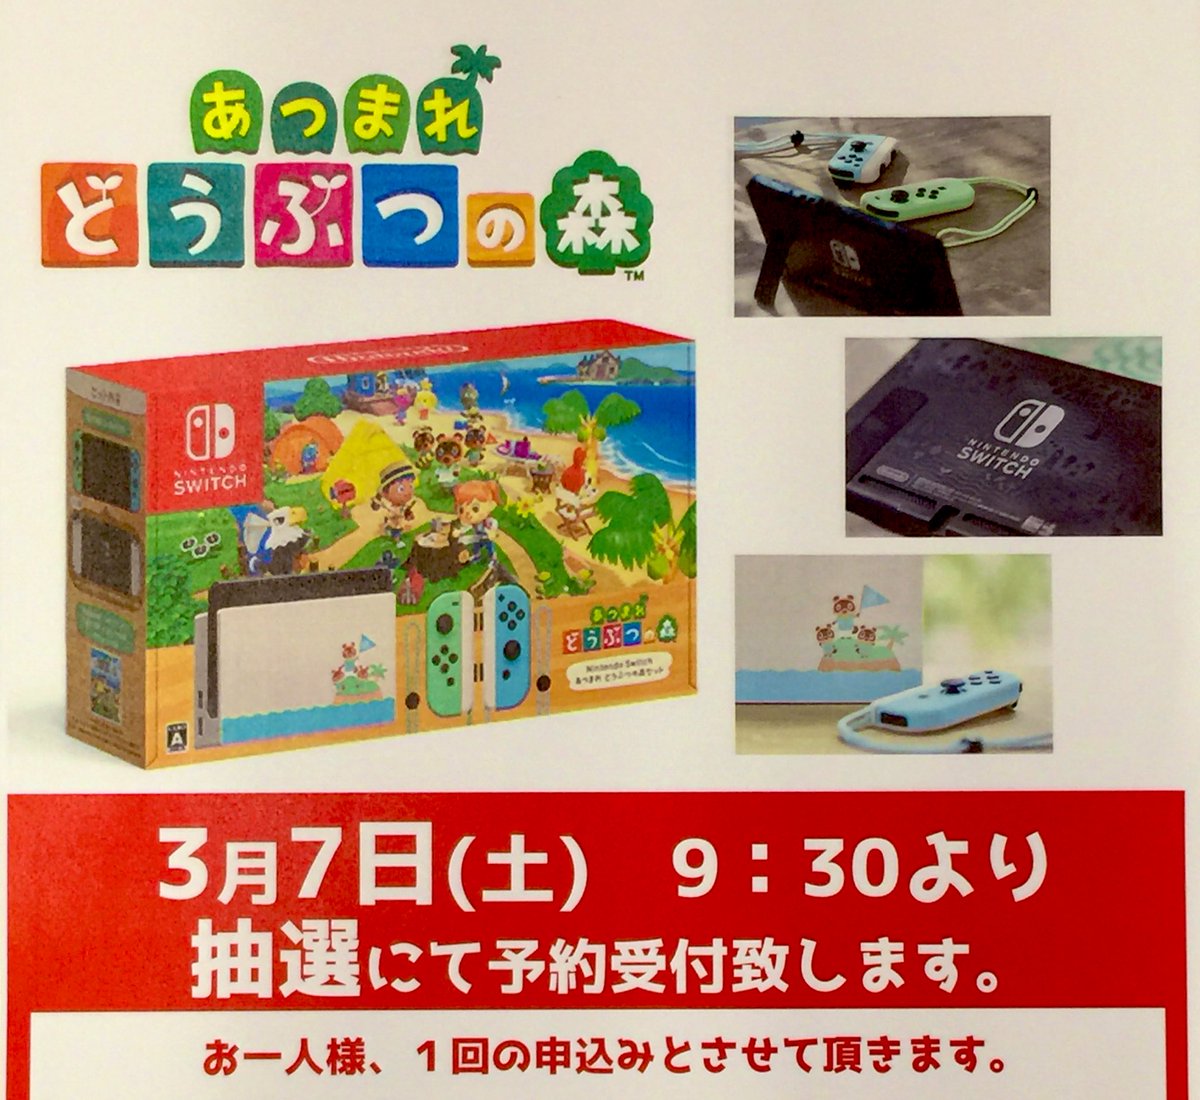 Nintendo Switch あつまれ どうぶつの森セット について抽選での予約受付を行うとtsutaya Book Garage 枚方ベルパルレ店が発表 Nintendo Switch 情報ブログ 非公式